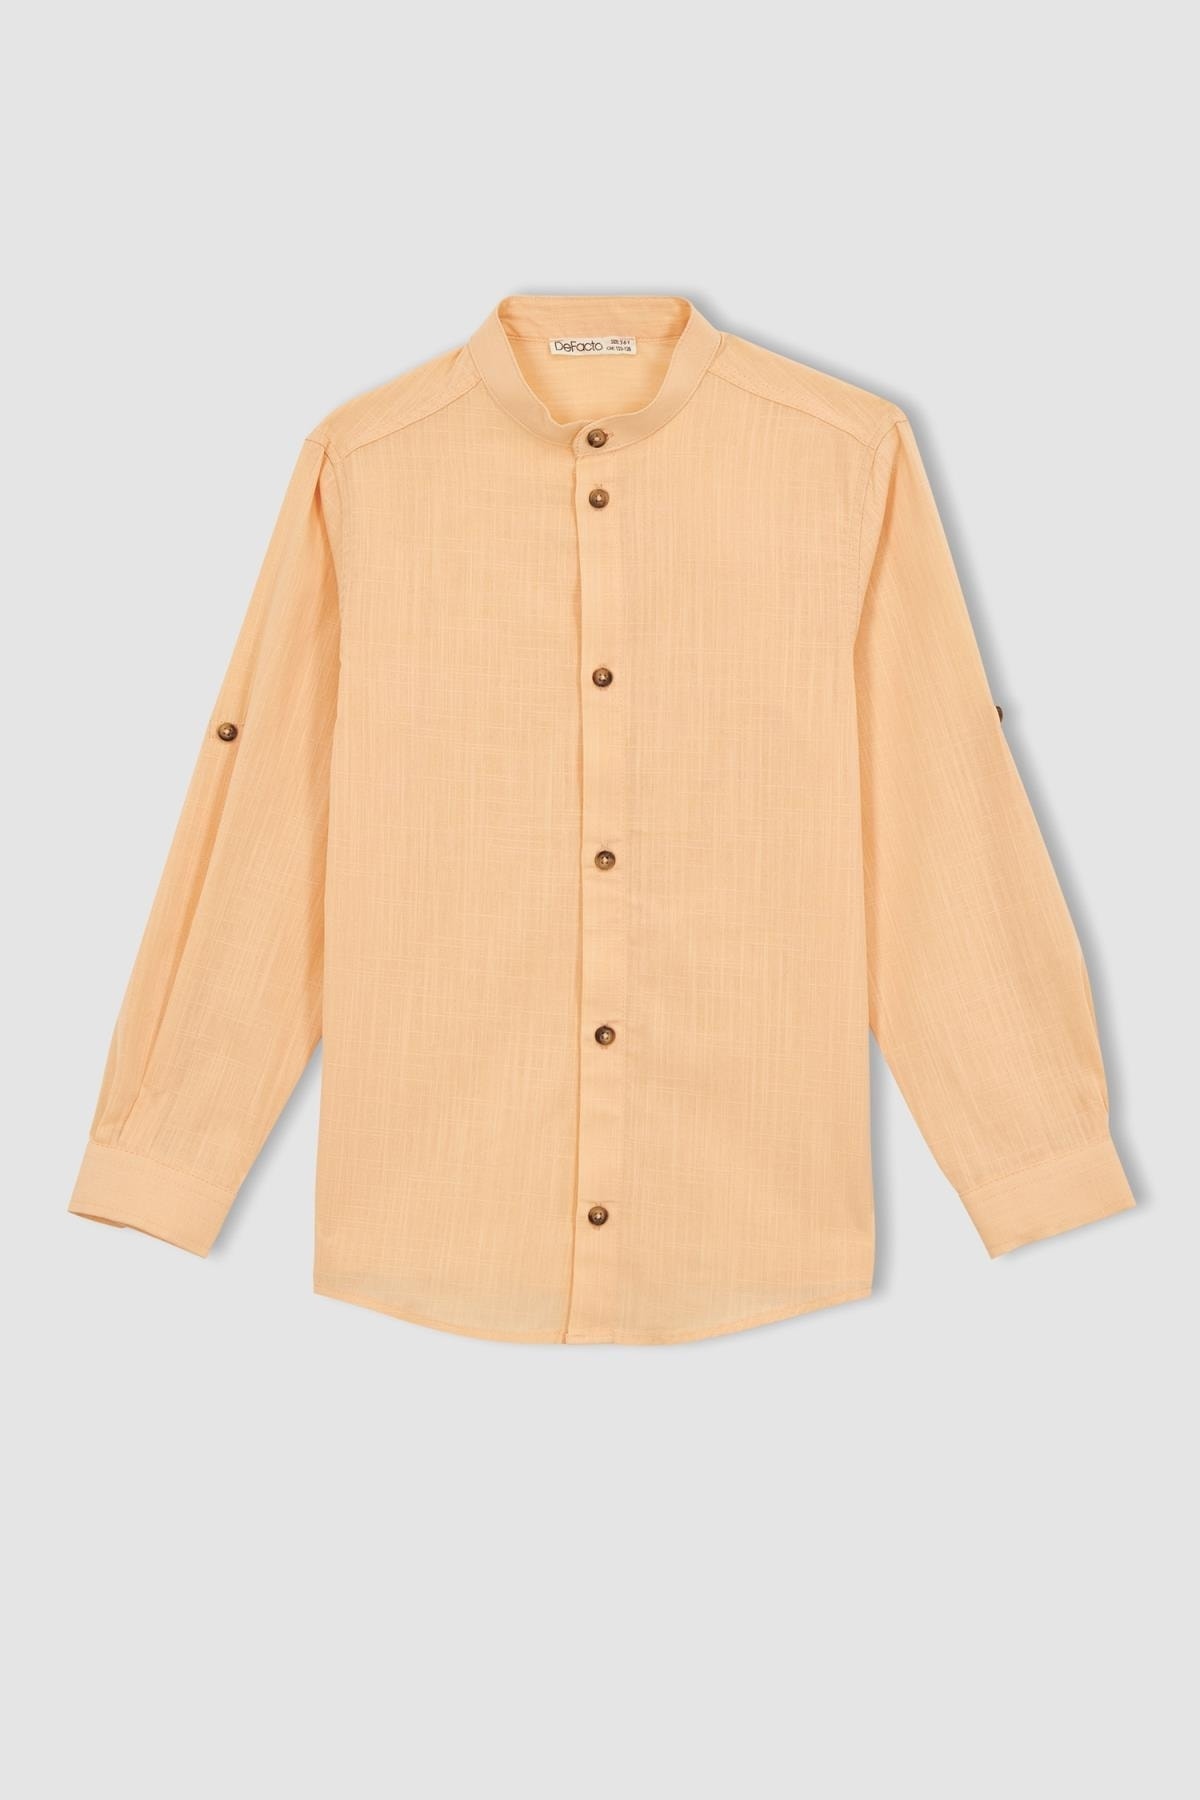 پیراهن آستین بلند یقه راسته نارنجی روشن پسرانه دیفکتو Defacto